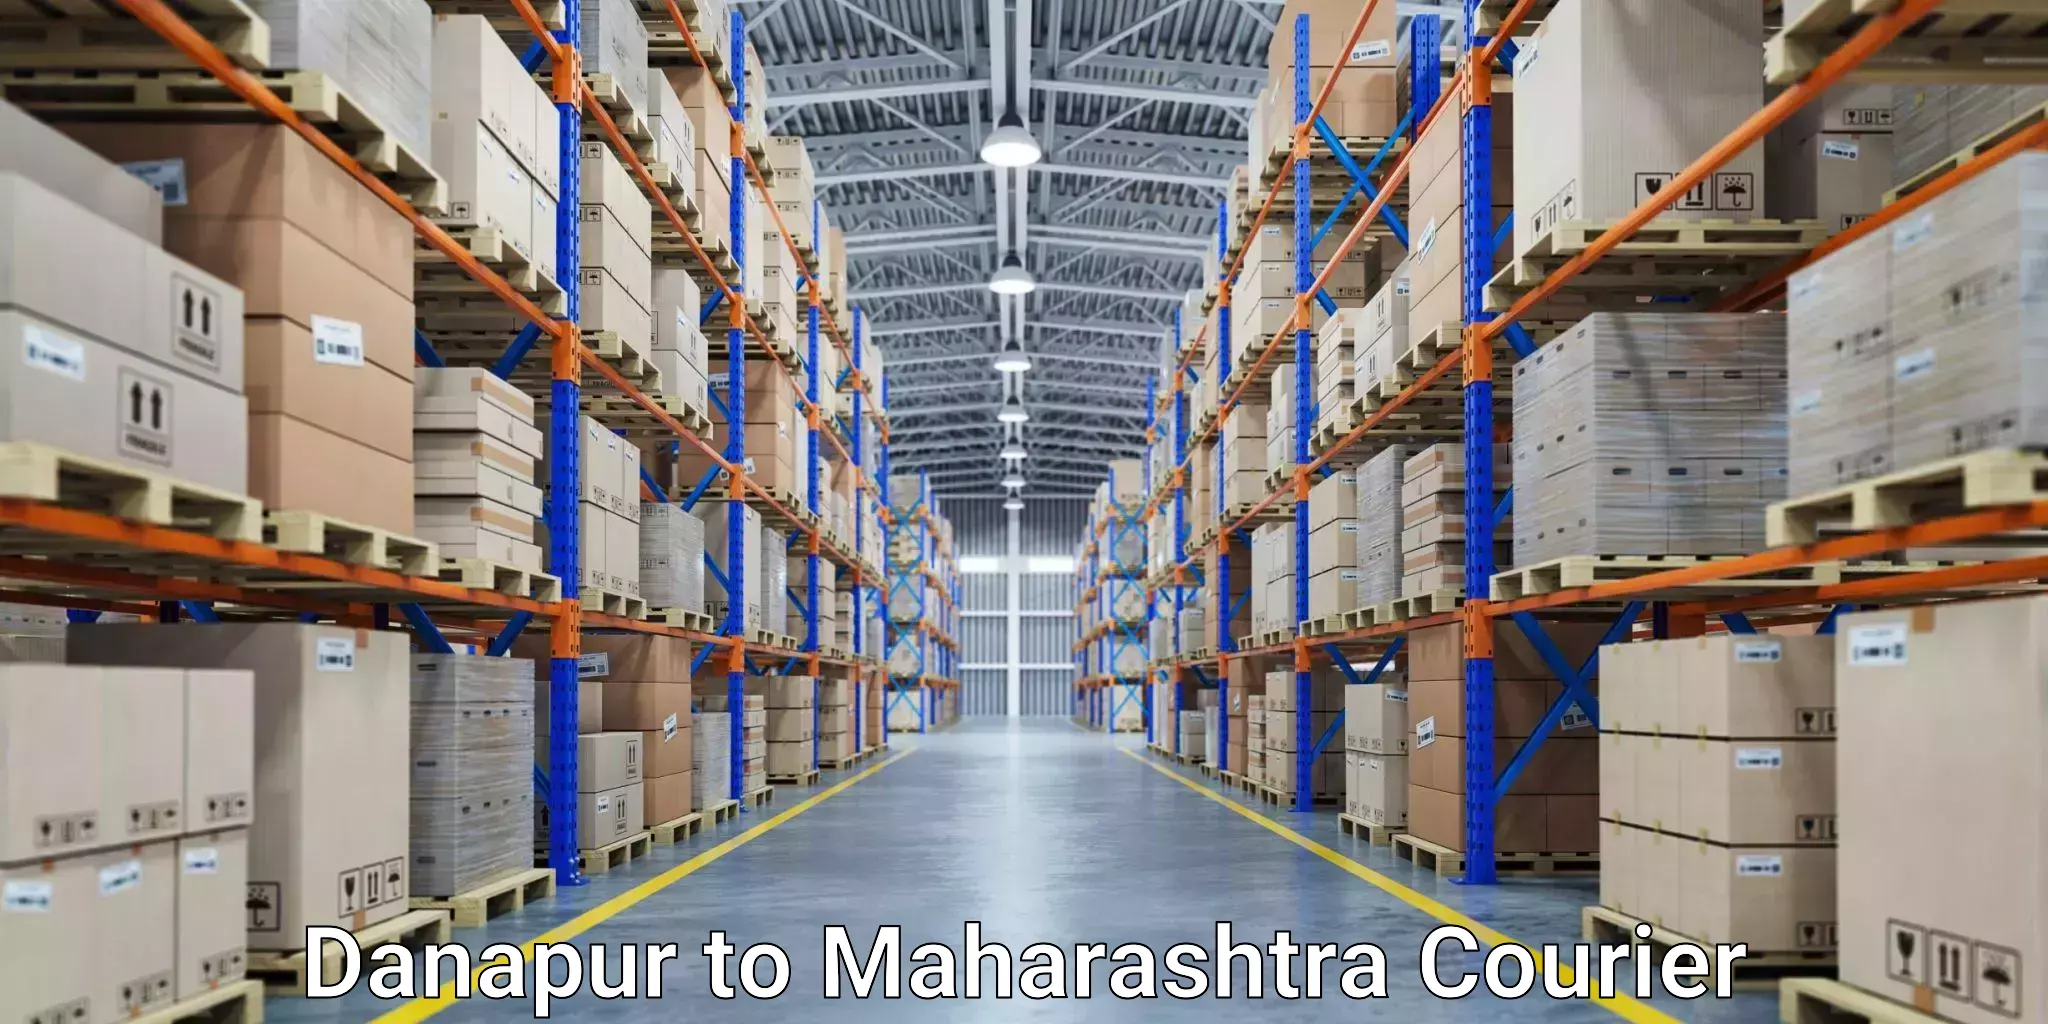 Tech-enabled shipping Danapur to Maharashtra